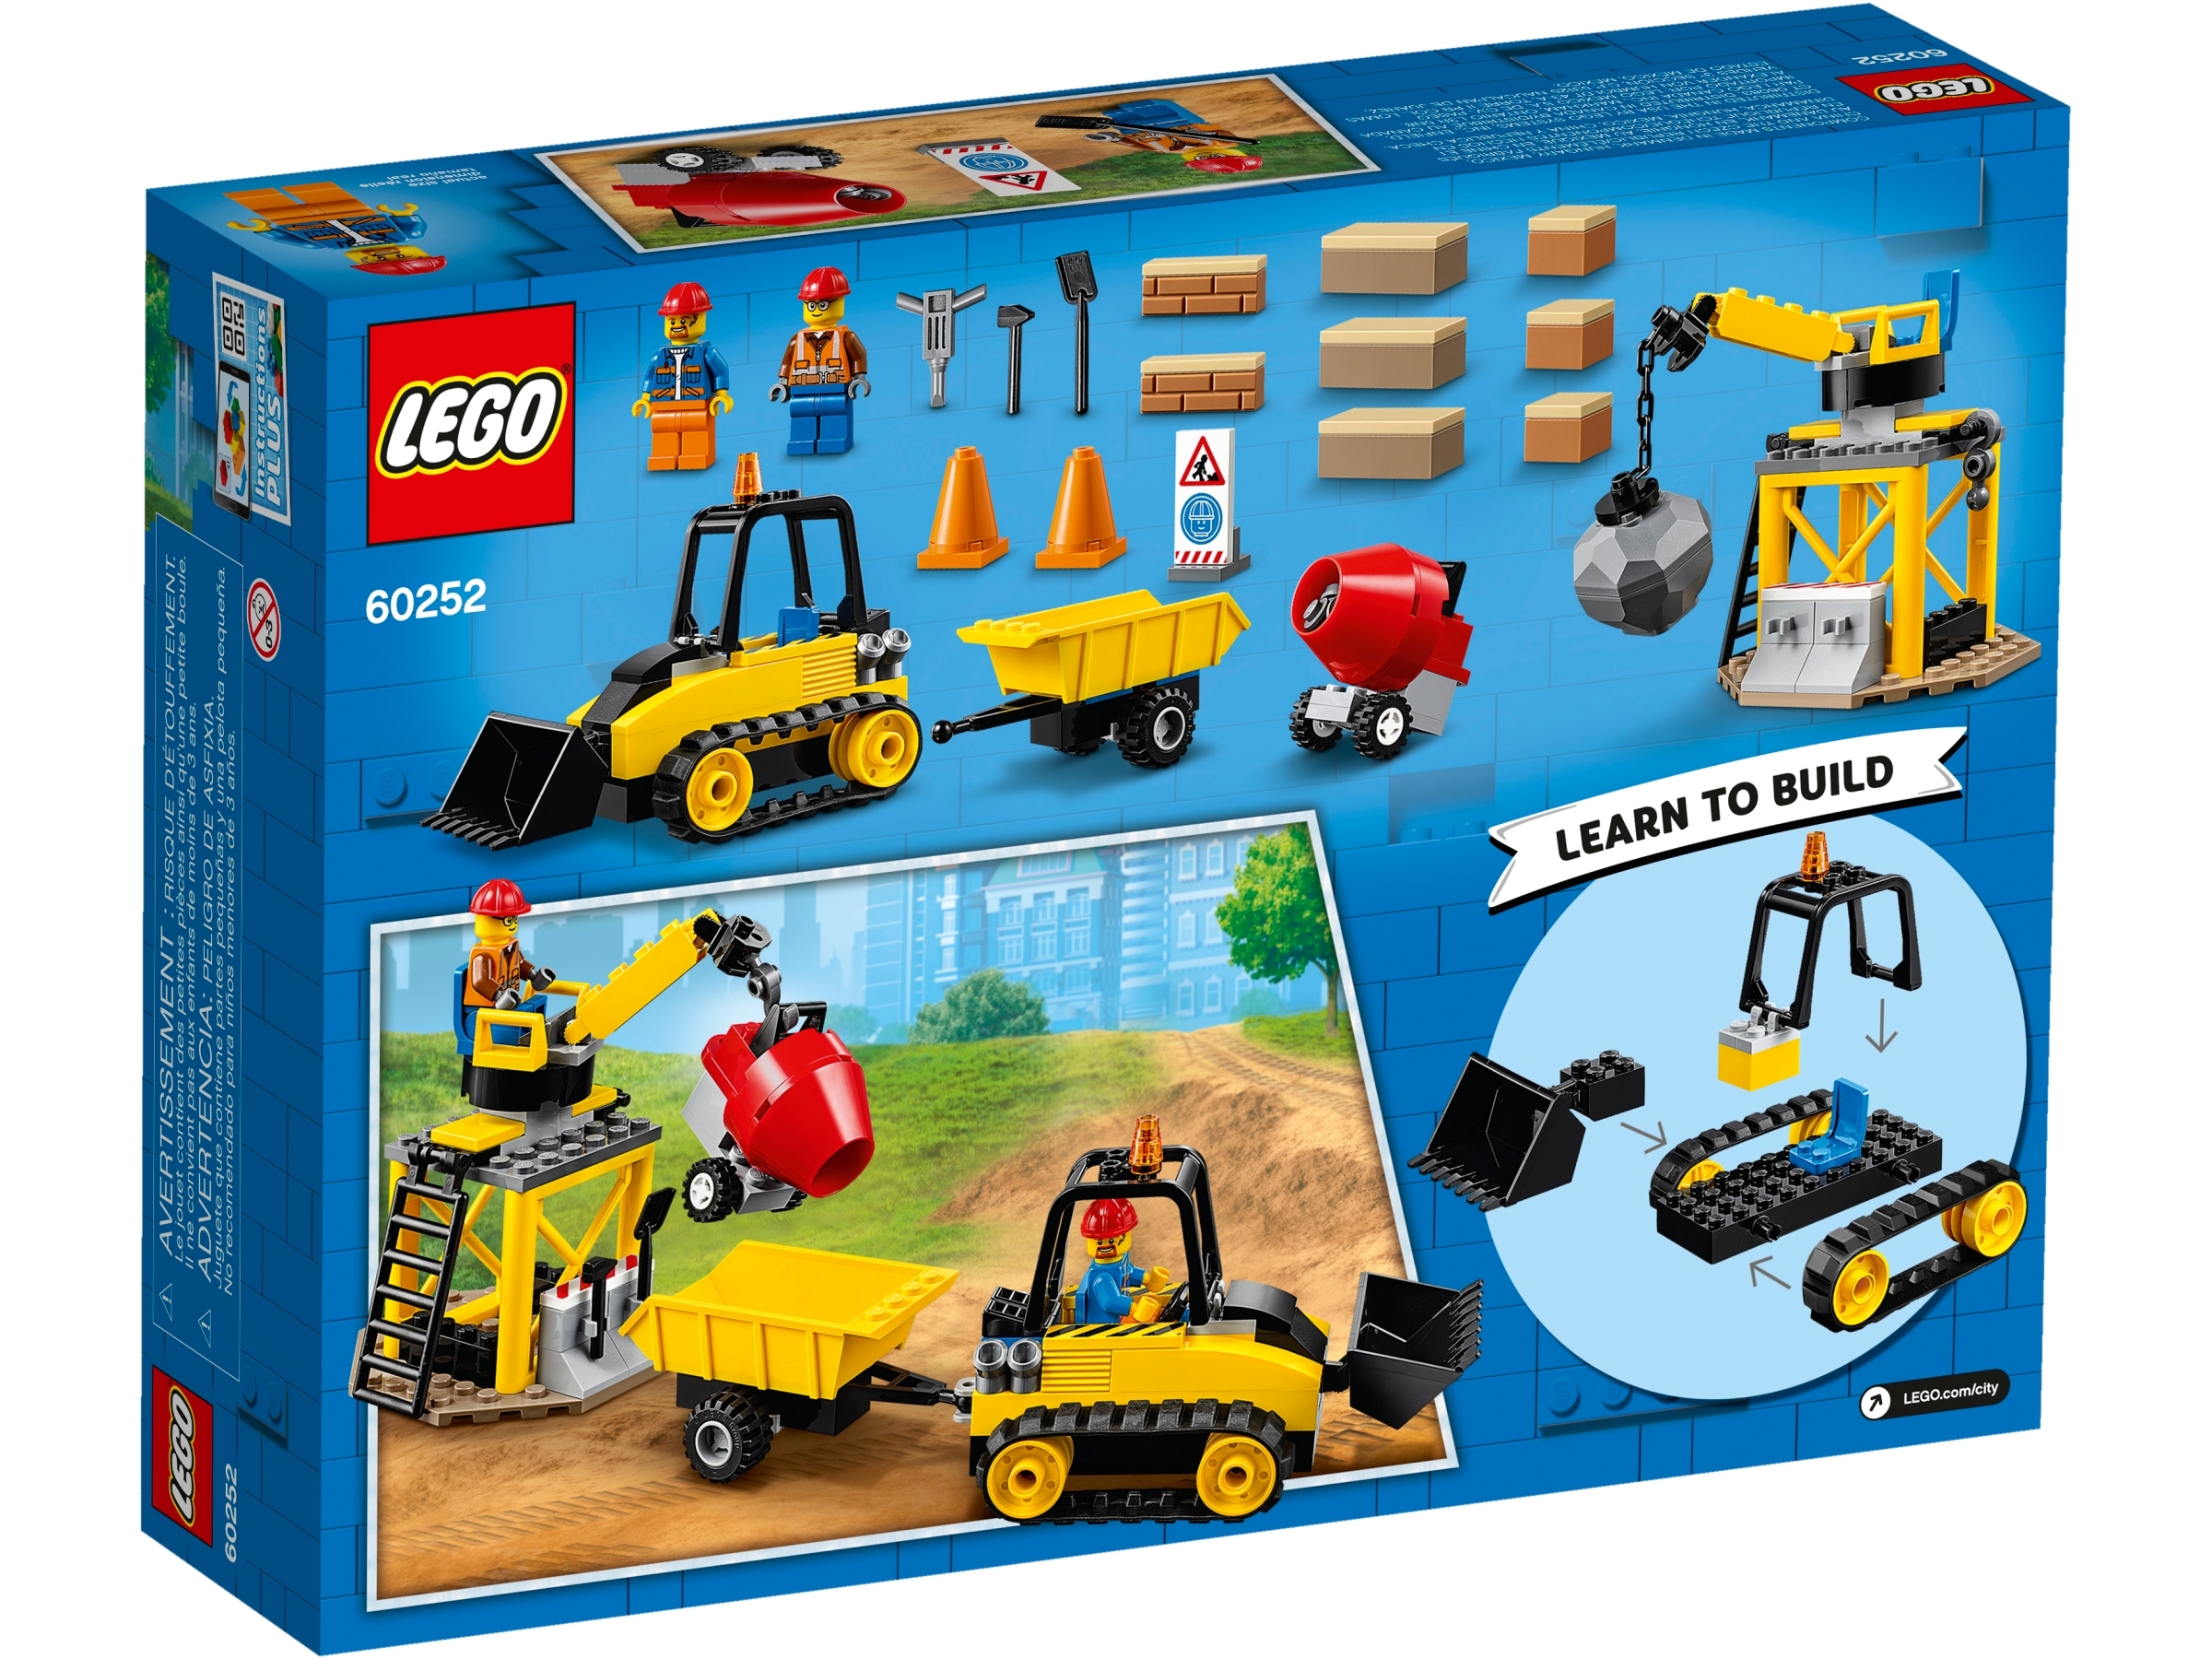 60252 Lego City Construction Bulldozer